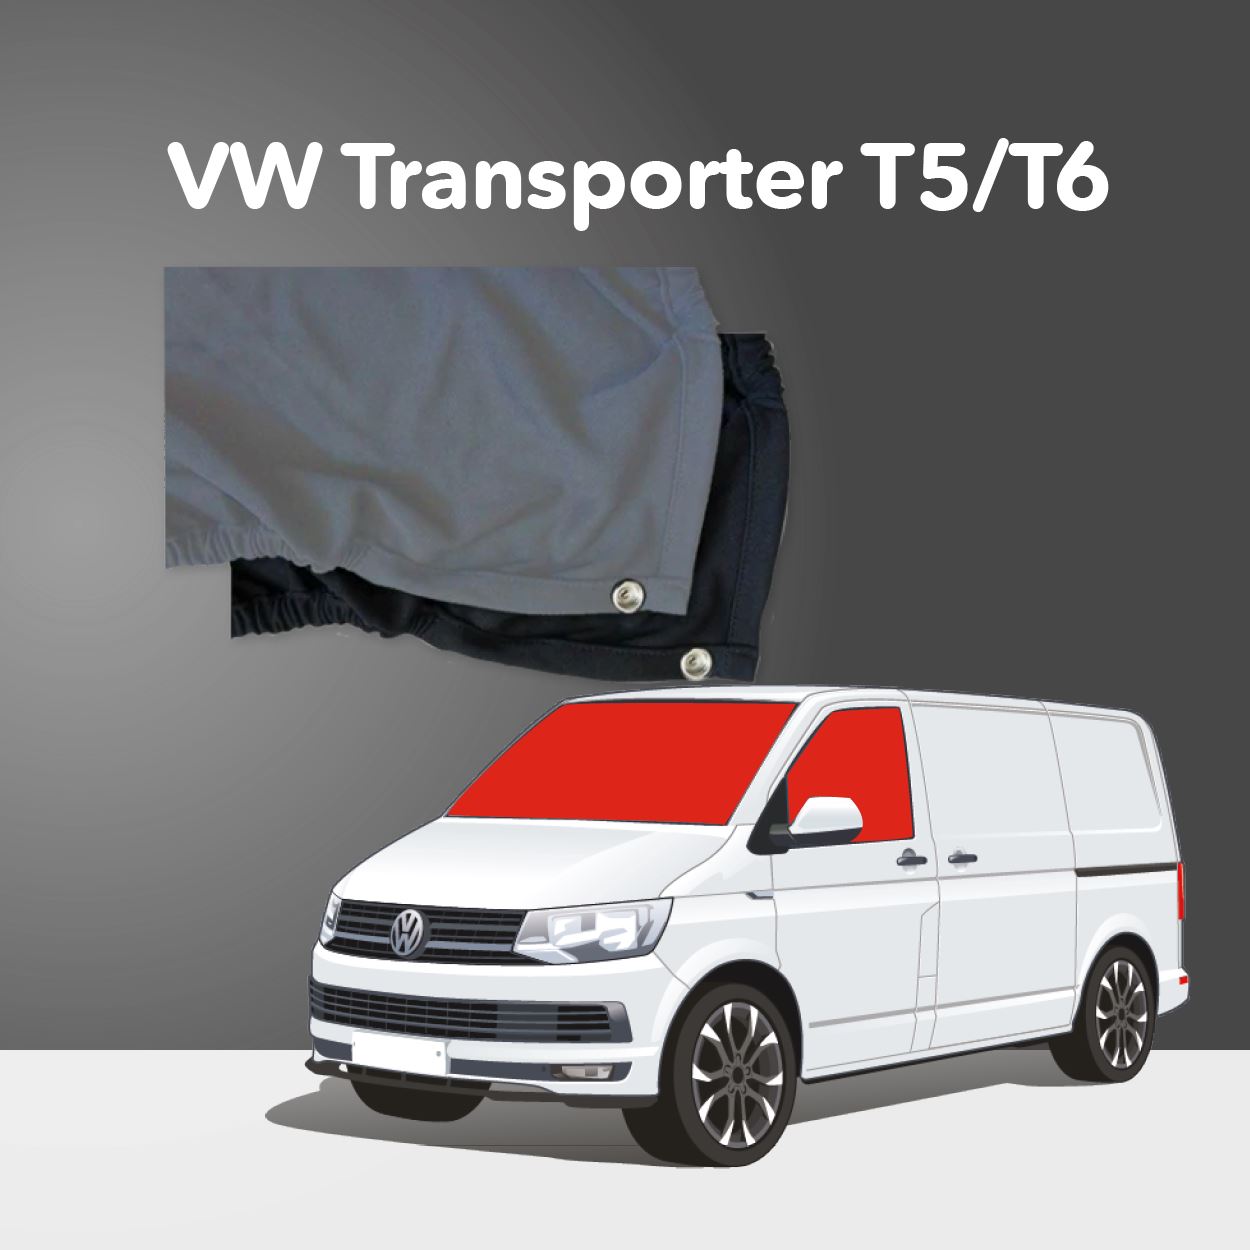 Trennvorhang für Pkw oder Transporter, zwischen Vorder- und Rücksitzen,  schwarz